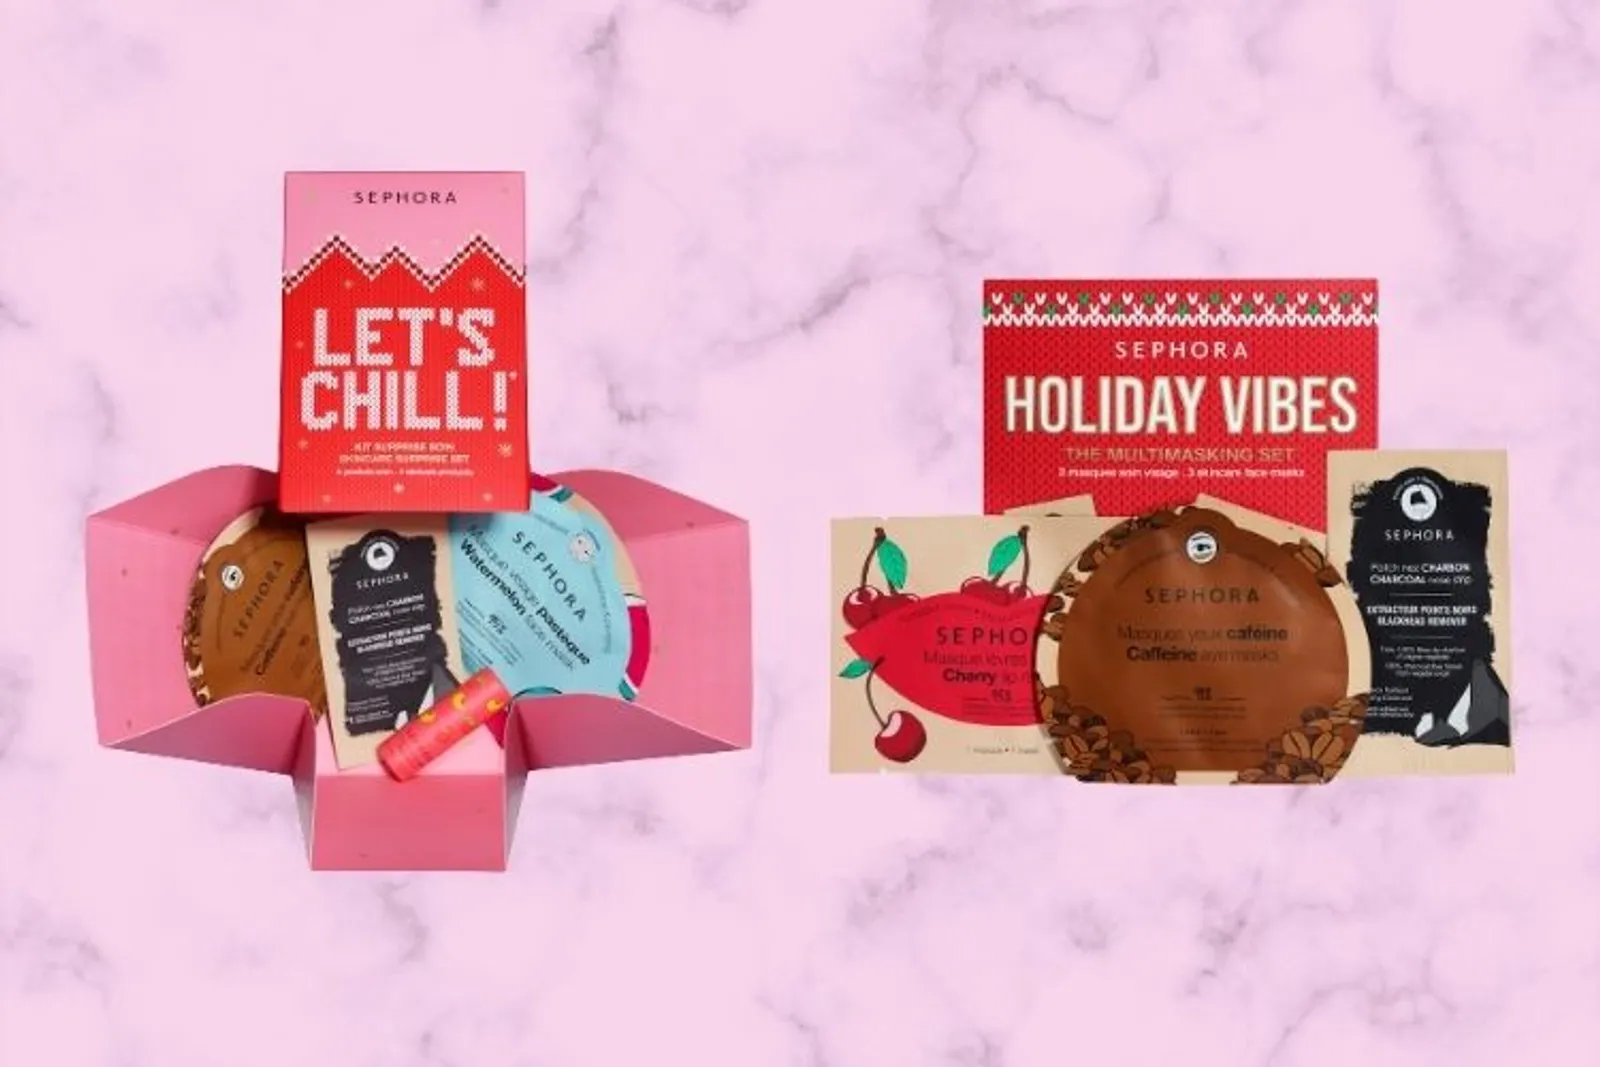 Cocok untuk Hadiah, Ini Koleksi Holiday Vibes dari Sephora